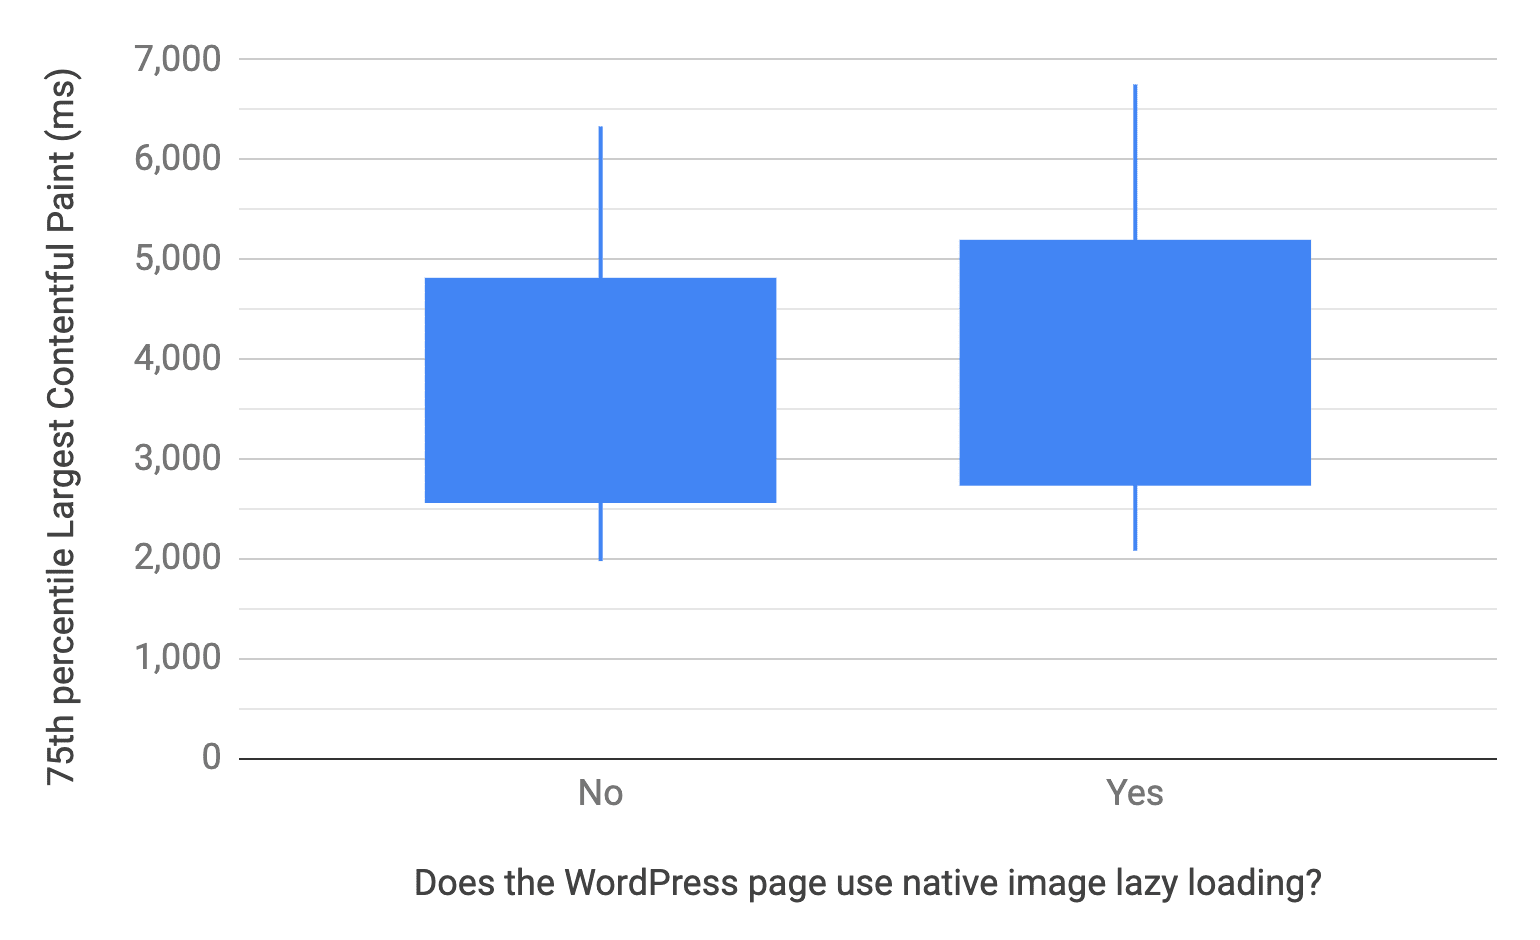 Biểu đồ Box and whisker cho thấy phân vị thứ 10, 25, 75 và 90 cho các trang WordPress có và không sử dụng tính năng tải từng phần hình ảnh ở cấp trình duyệt. Nói cách khác, tỷ lệ phân phối LCP của các trang không sử dụng sẽ nhanh hơn so với các trang có sử dụng, tương tự như biểu đồ trước.